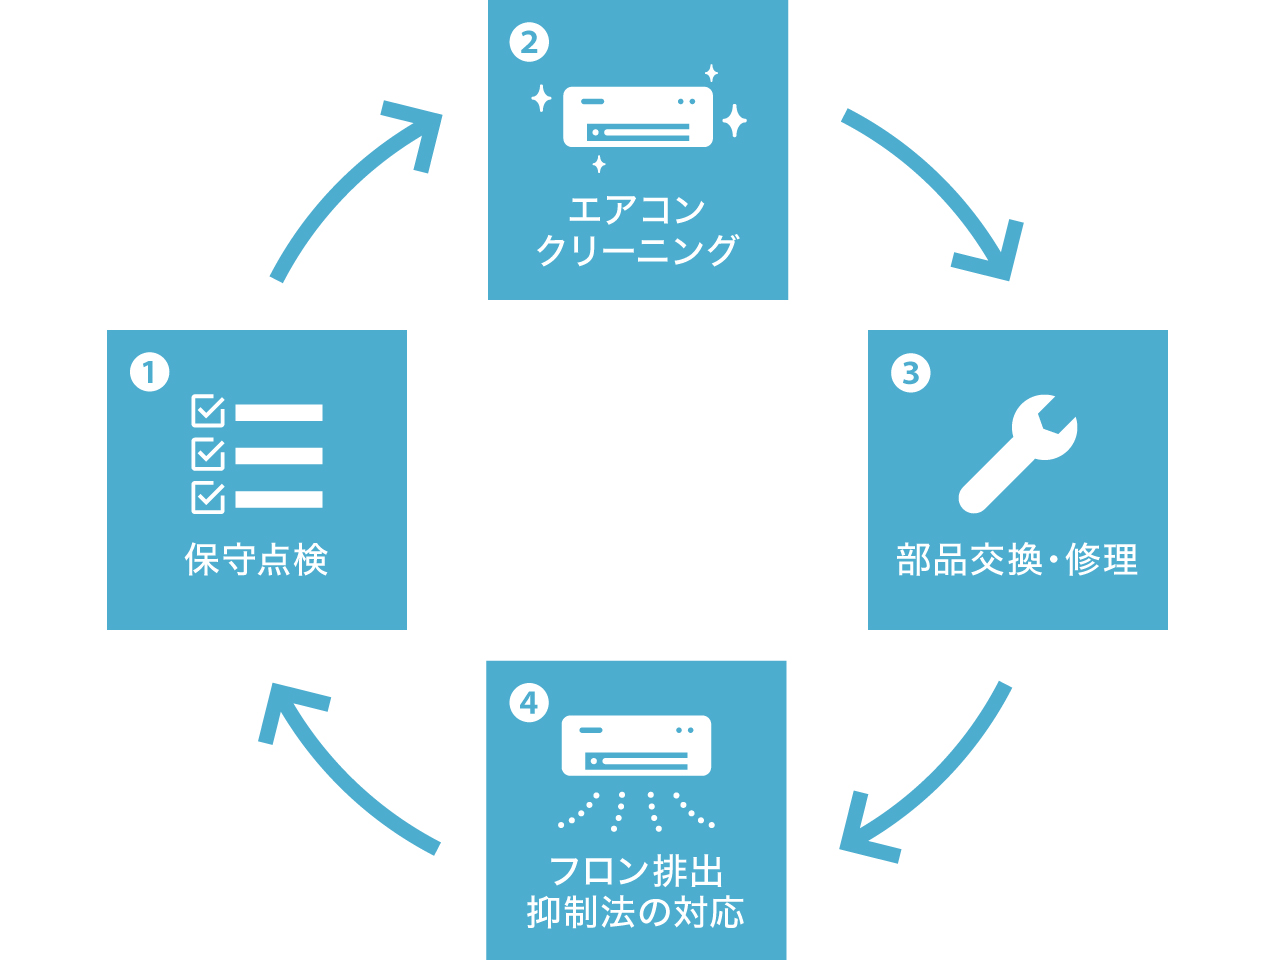 保守点検→エアコンクリーニング→部品交換・修理→フロン排出抑制法の対応